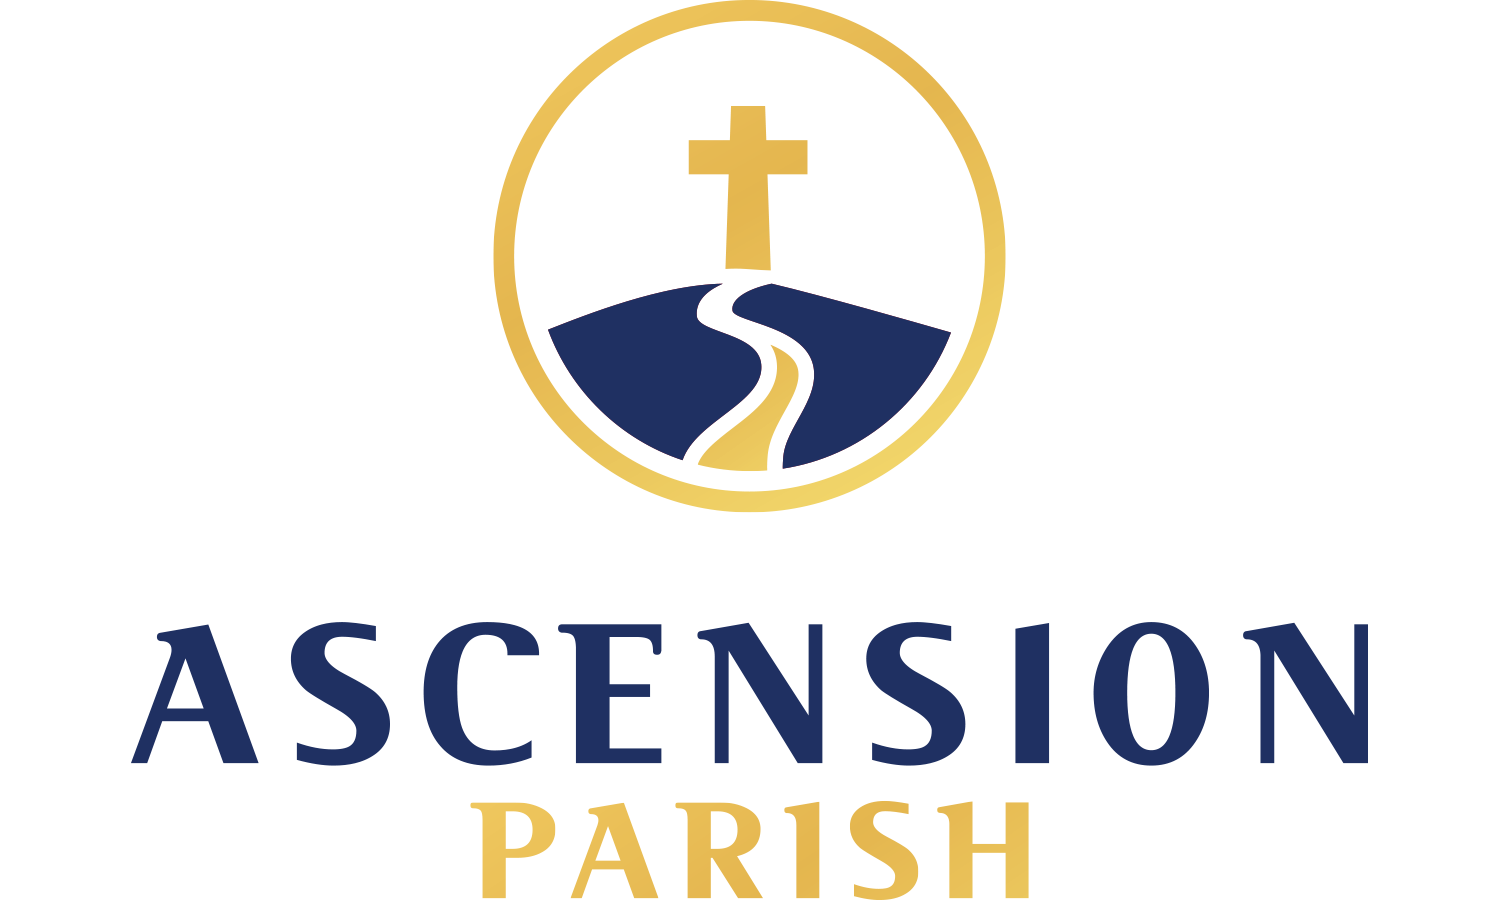 The Ascension Parish